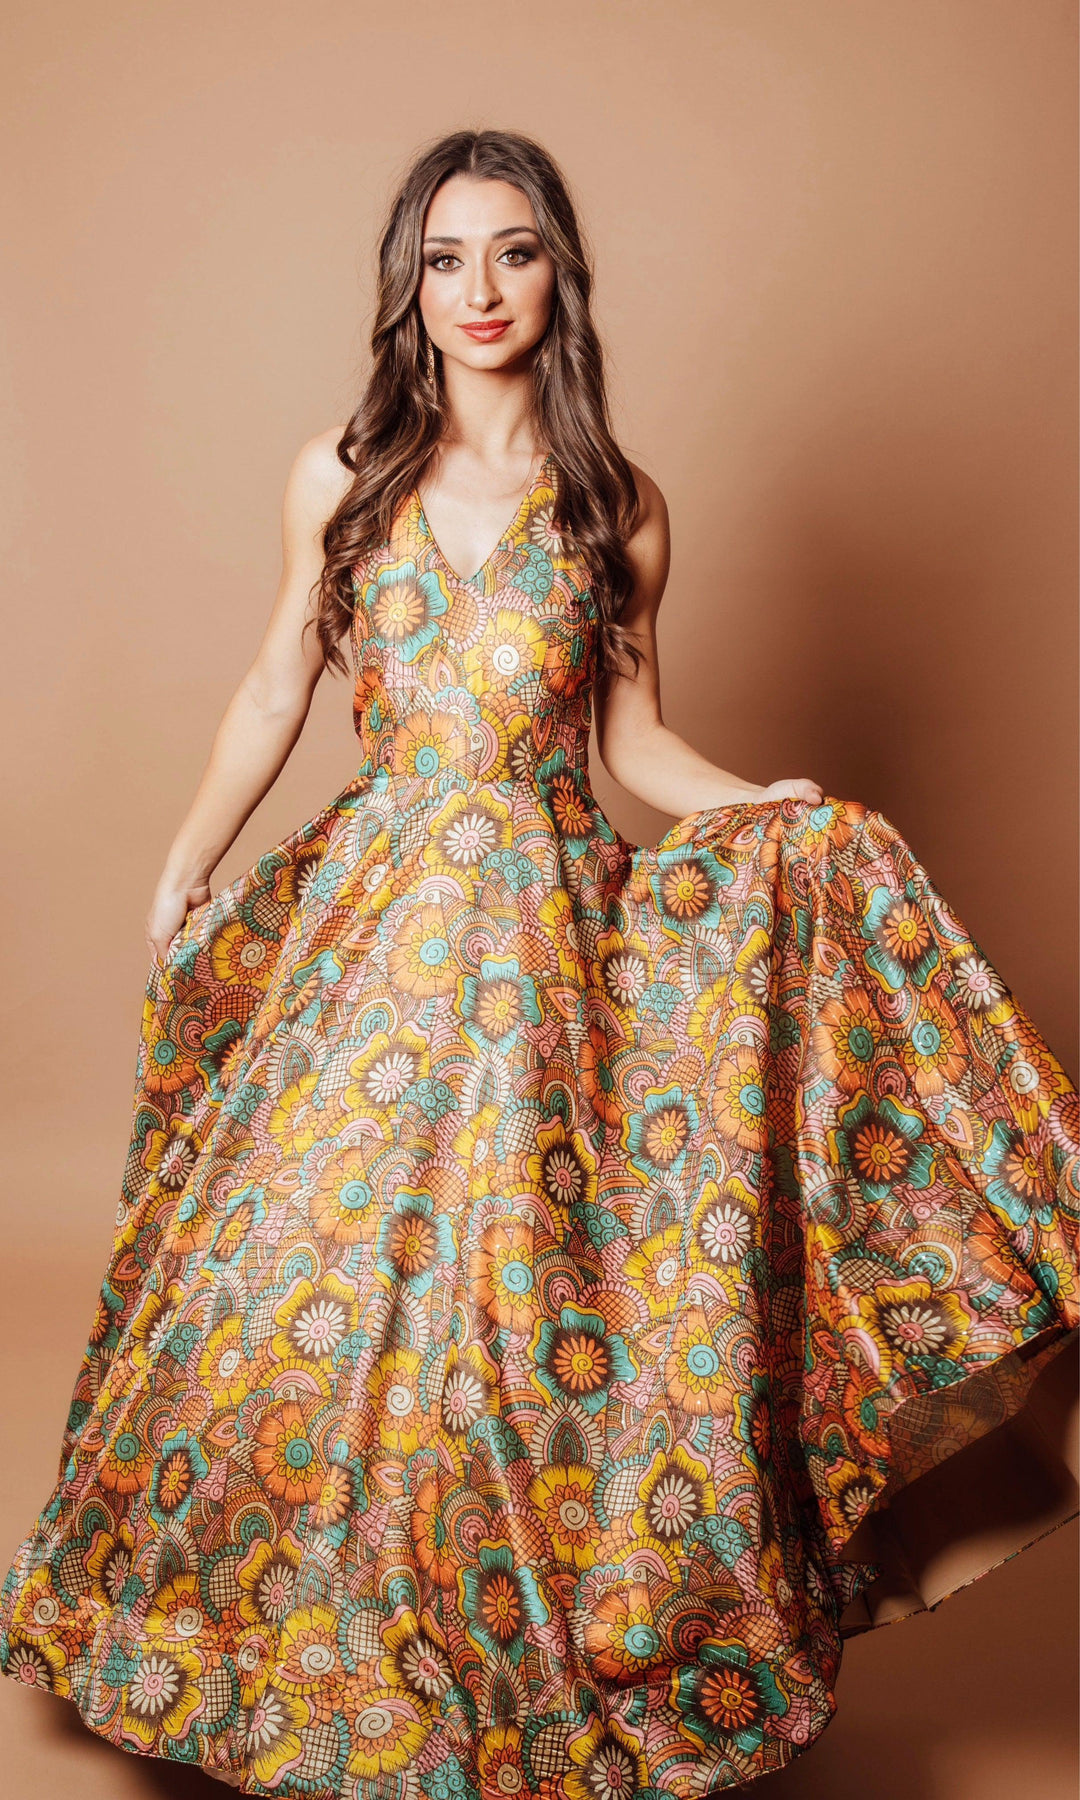 Buy Teal Blue Floral Print Kaftan Dress Online - Aarke India Store View